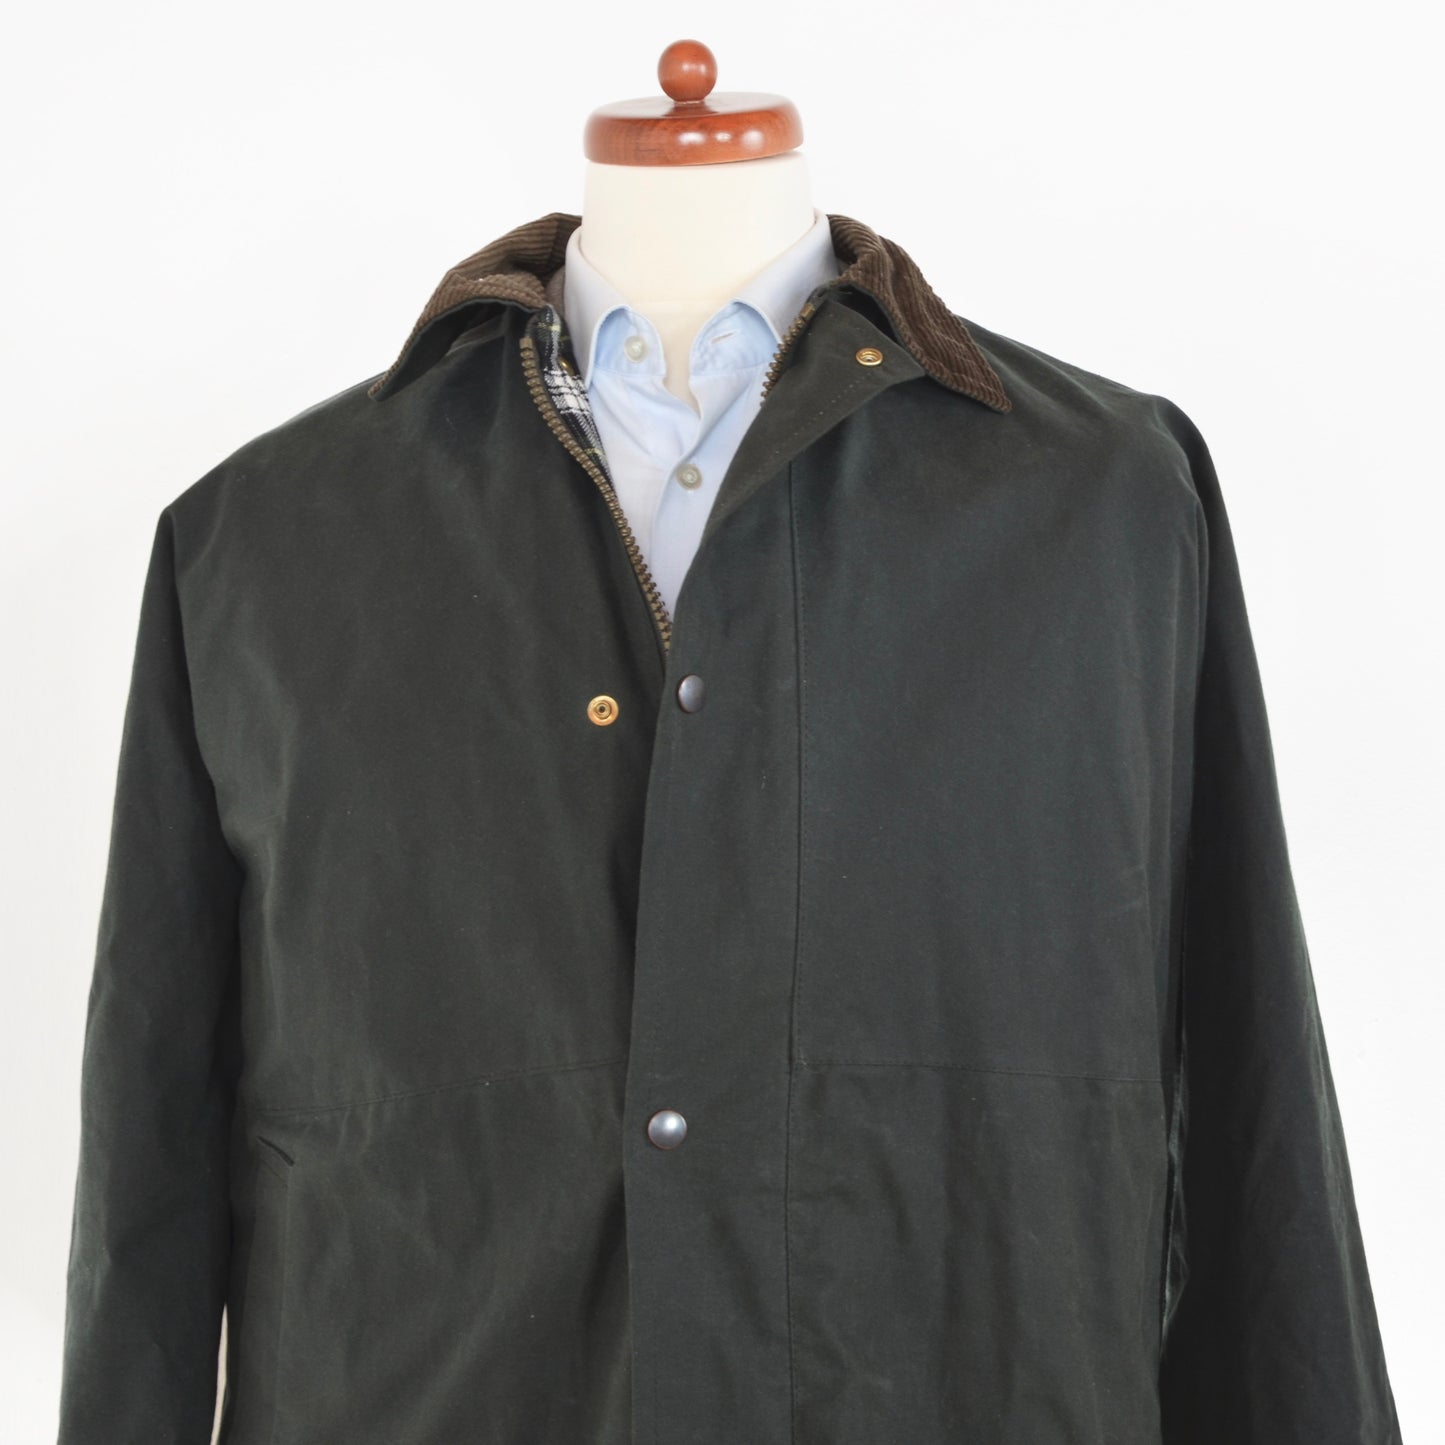 Sherwood Waxed Jacket Size XXXXXL - Green